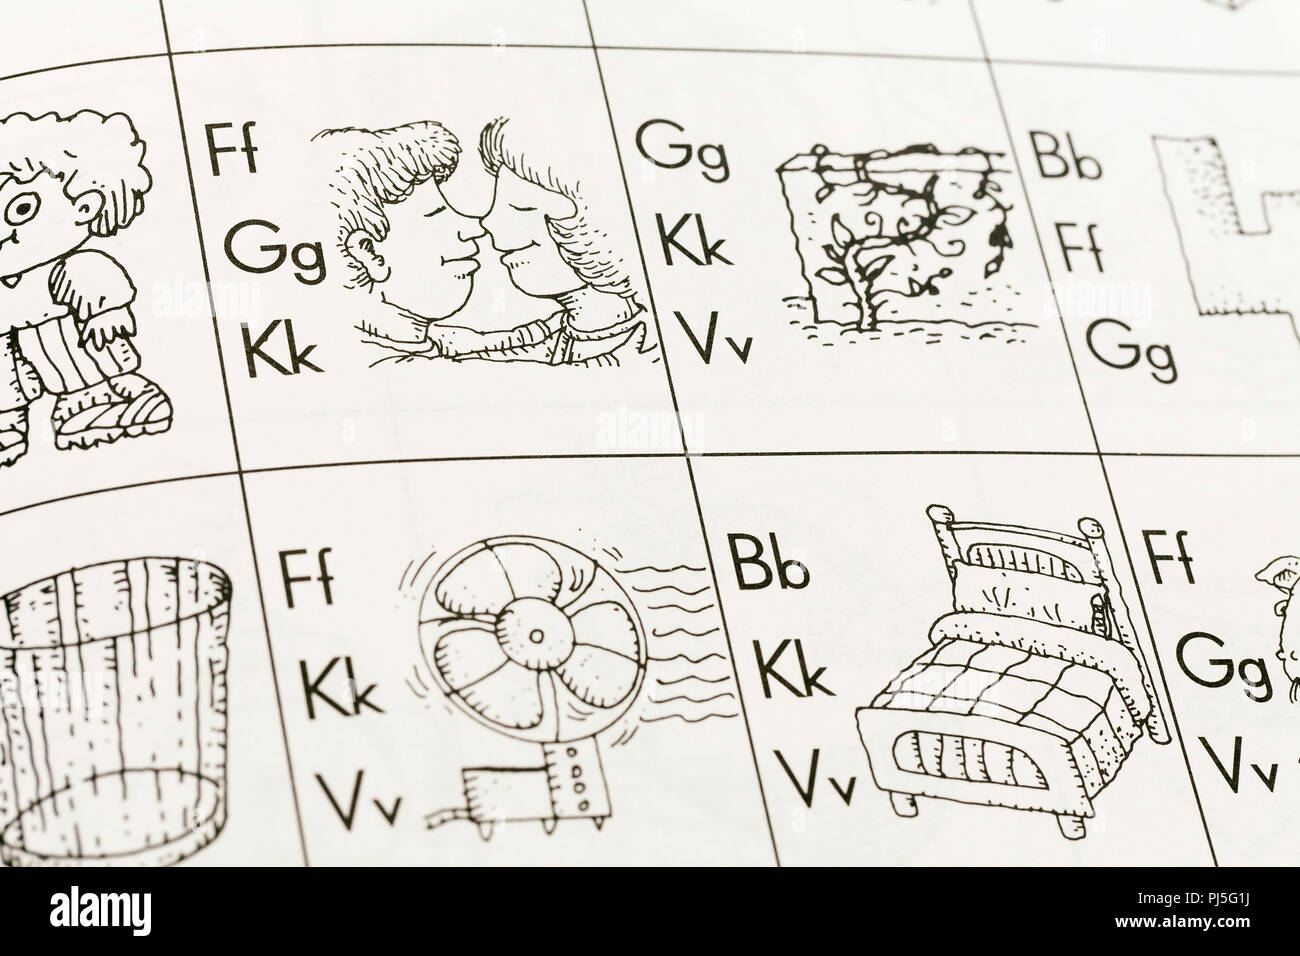 El nivel preescolar alfabeto inglés libro closeup - EE.UU. Foto de stock